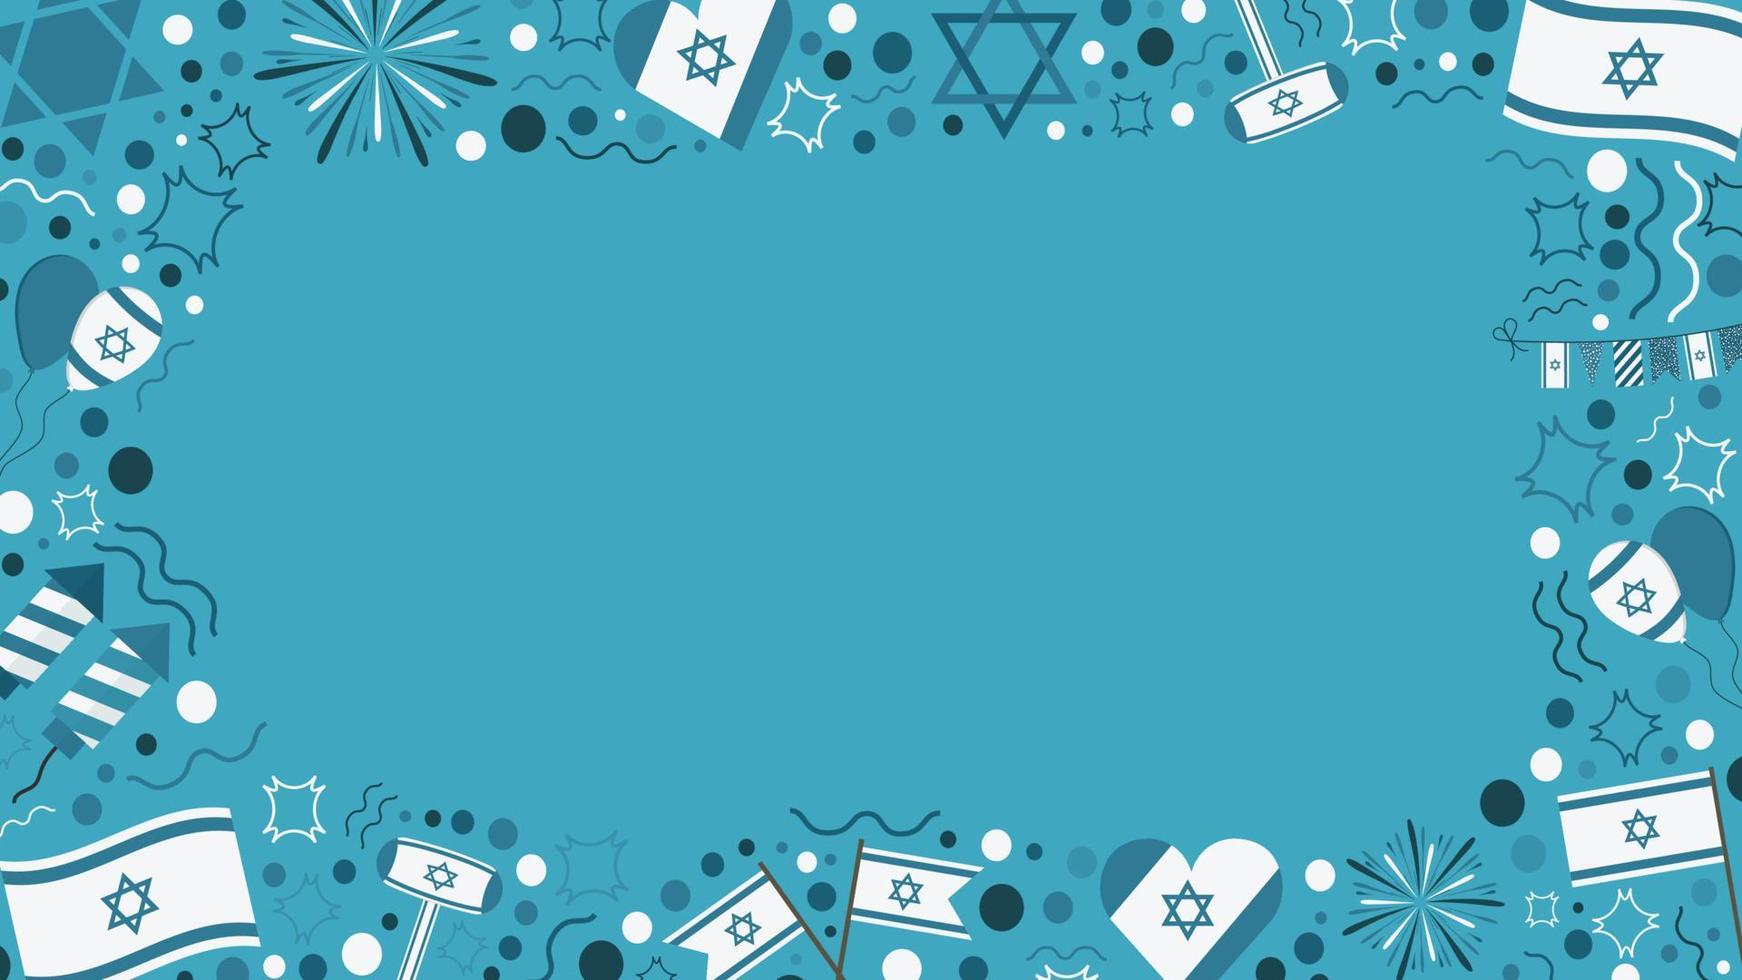 marco con iconos de diseño plano de vacaciones del día de la independencia de israel vector